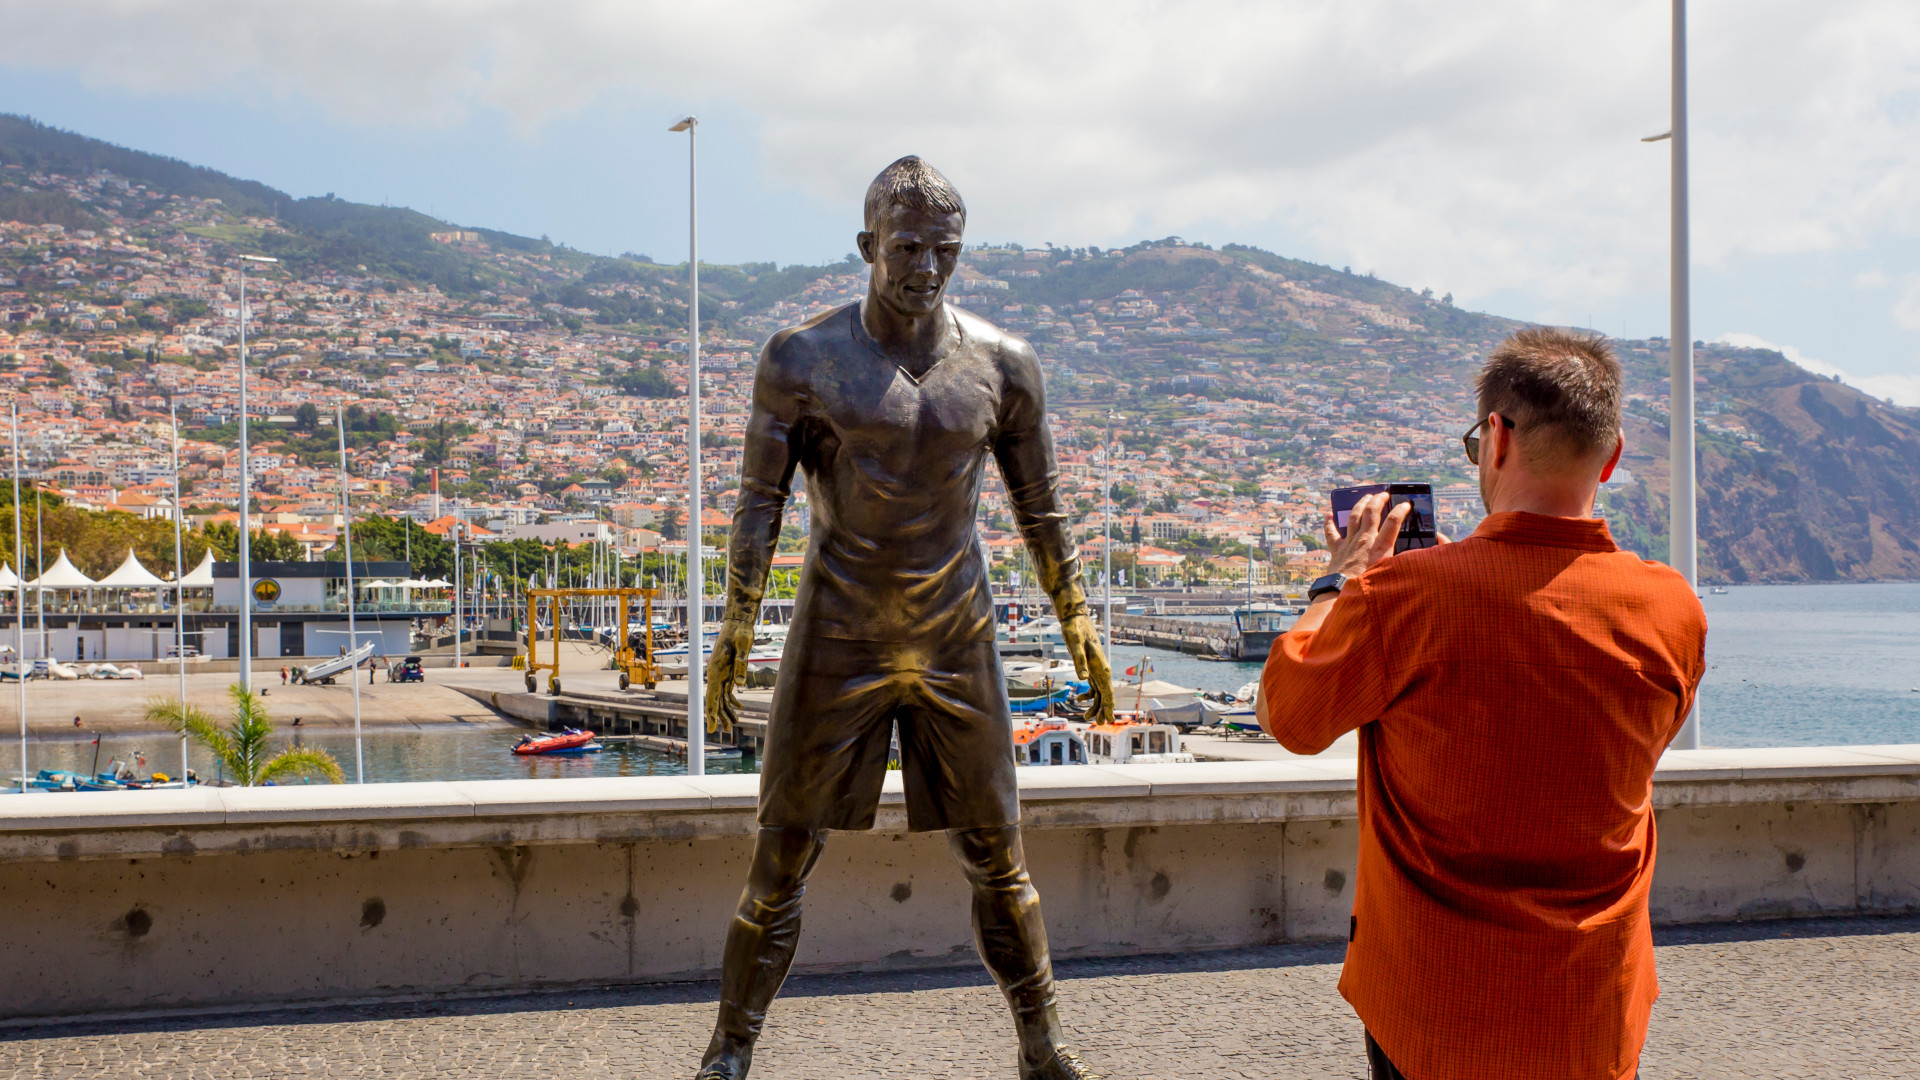 Ch. Ronaldo skulptūra šalia Funšalio uosto